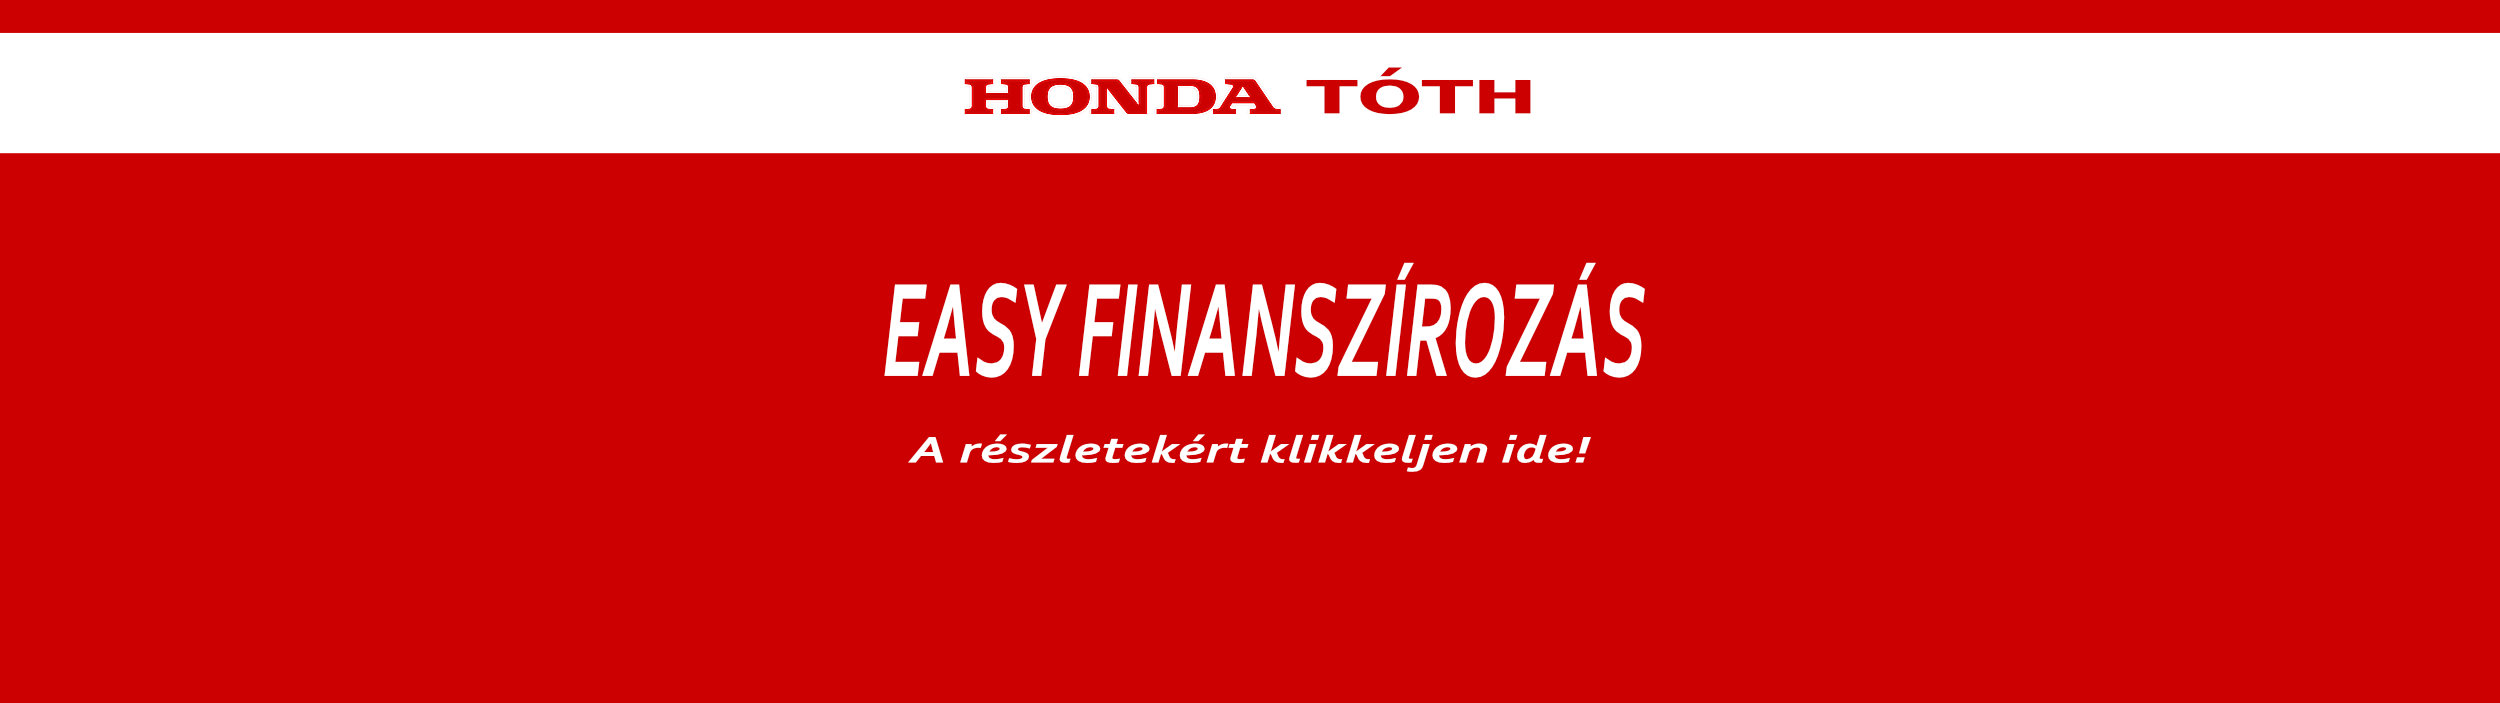 Honda Easy finanszírozás - Honda Tóth Szolnok